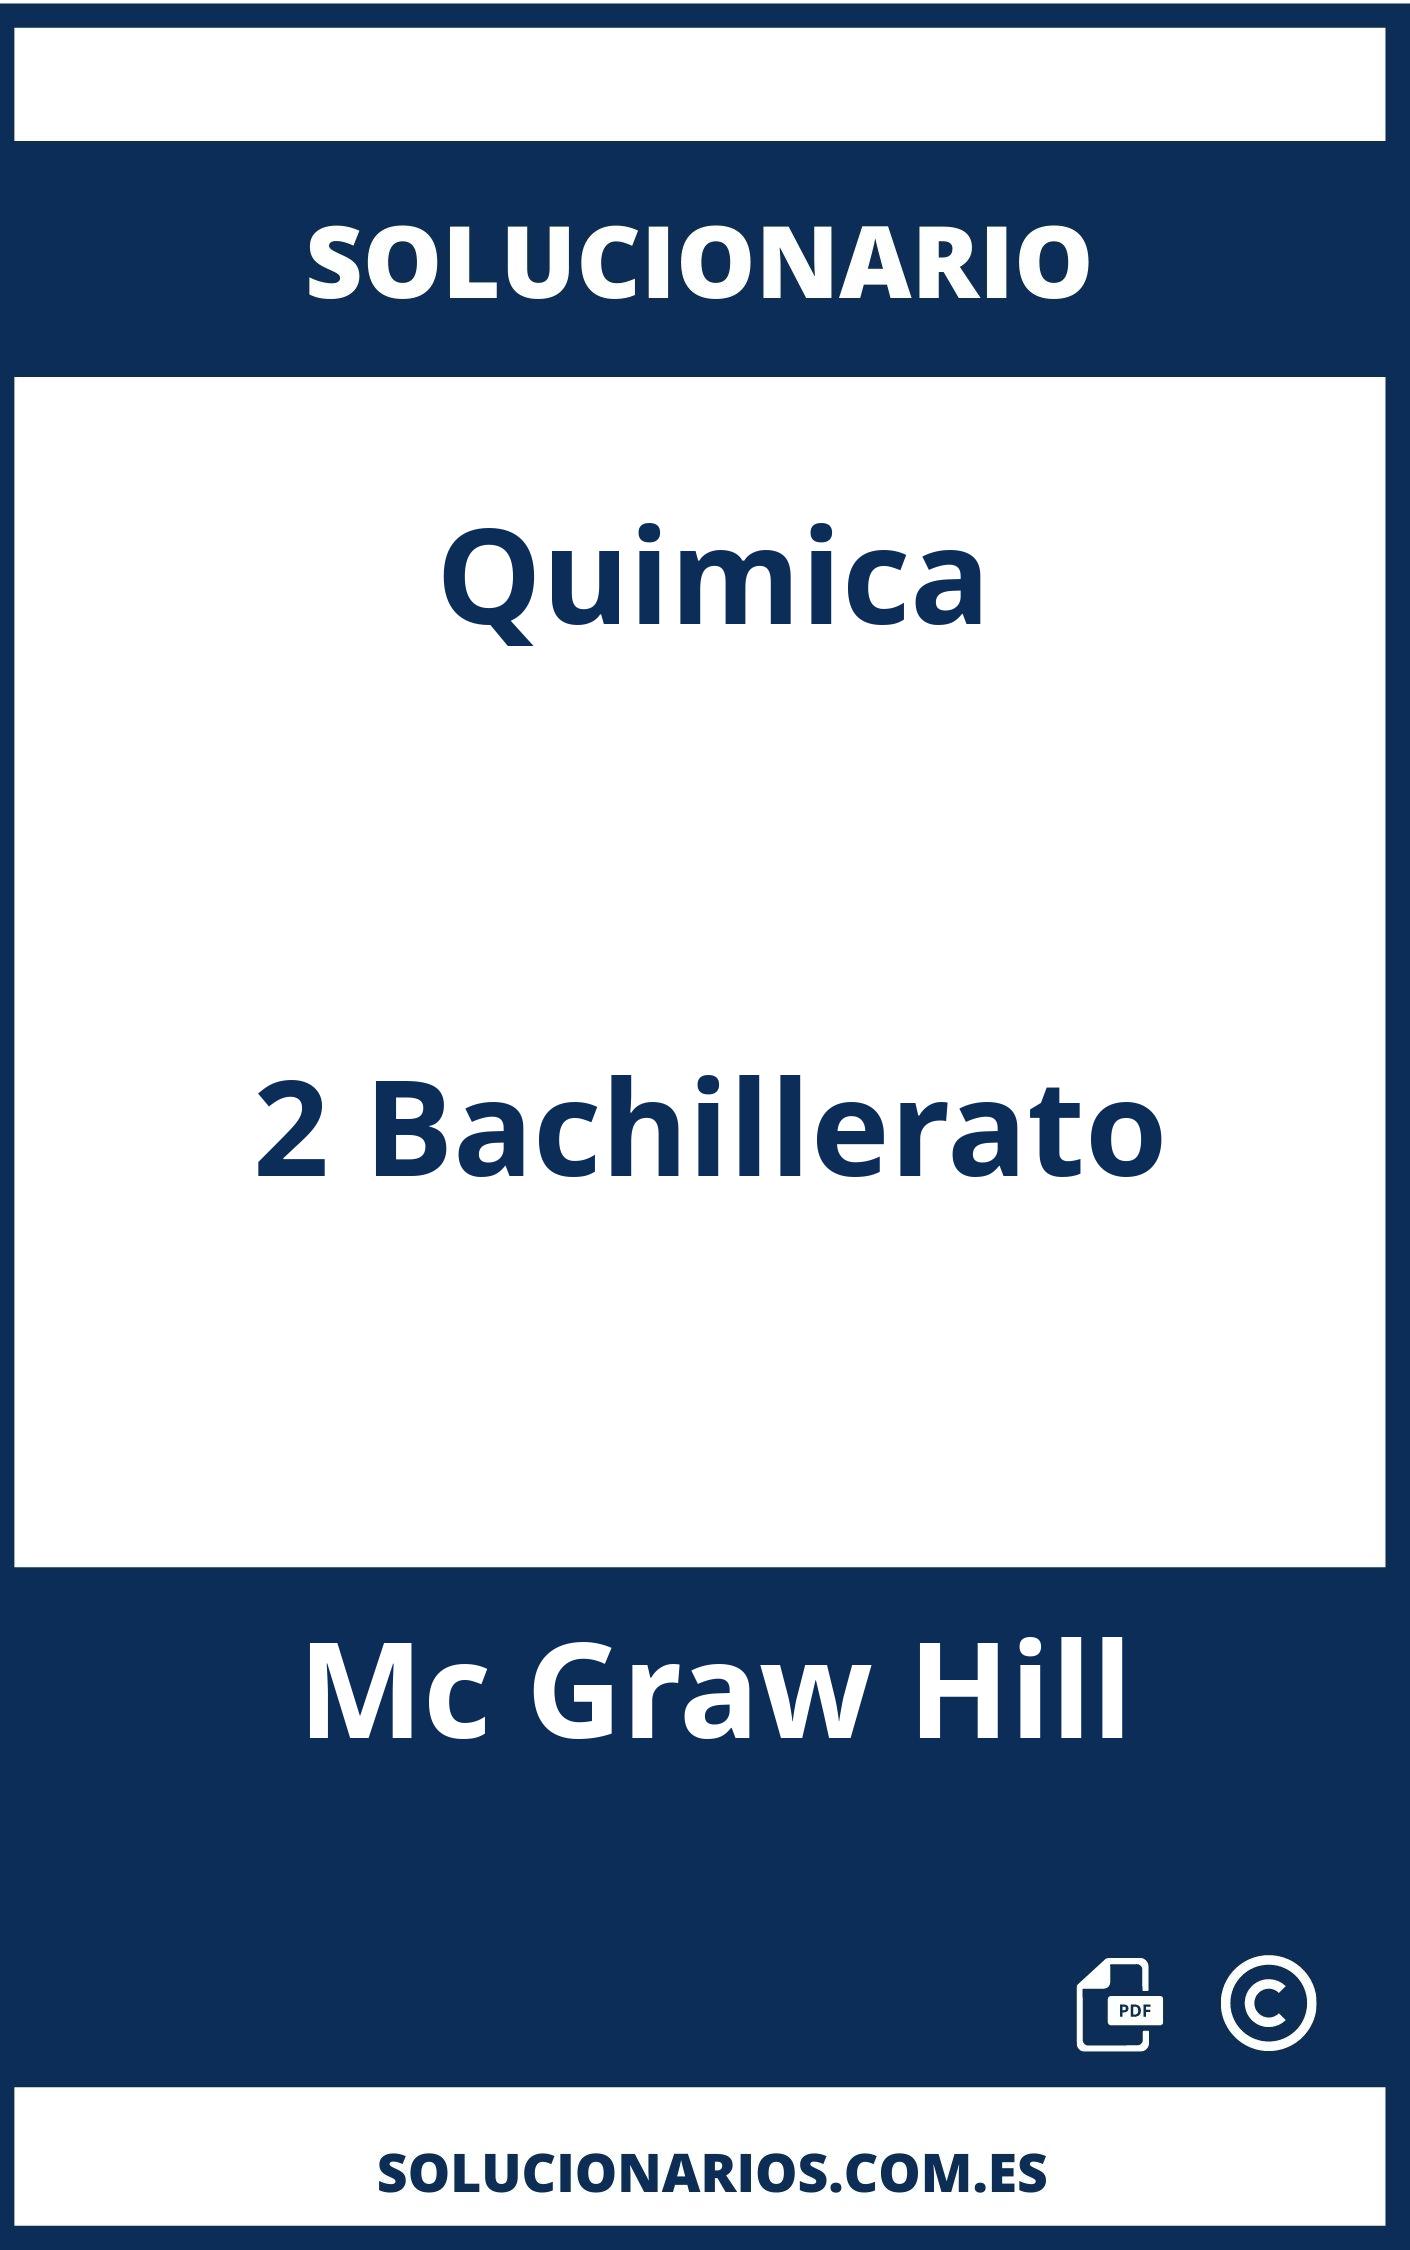 Solucionario Quimica 2 Bachillerato Mc Graw Hill